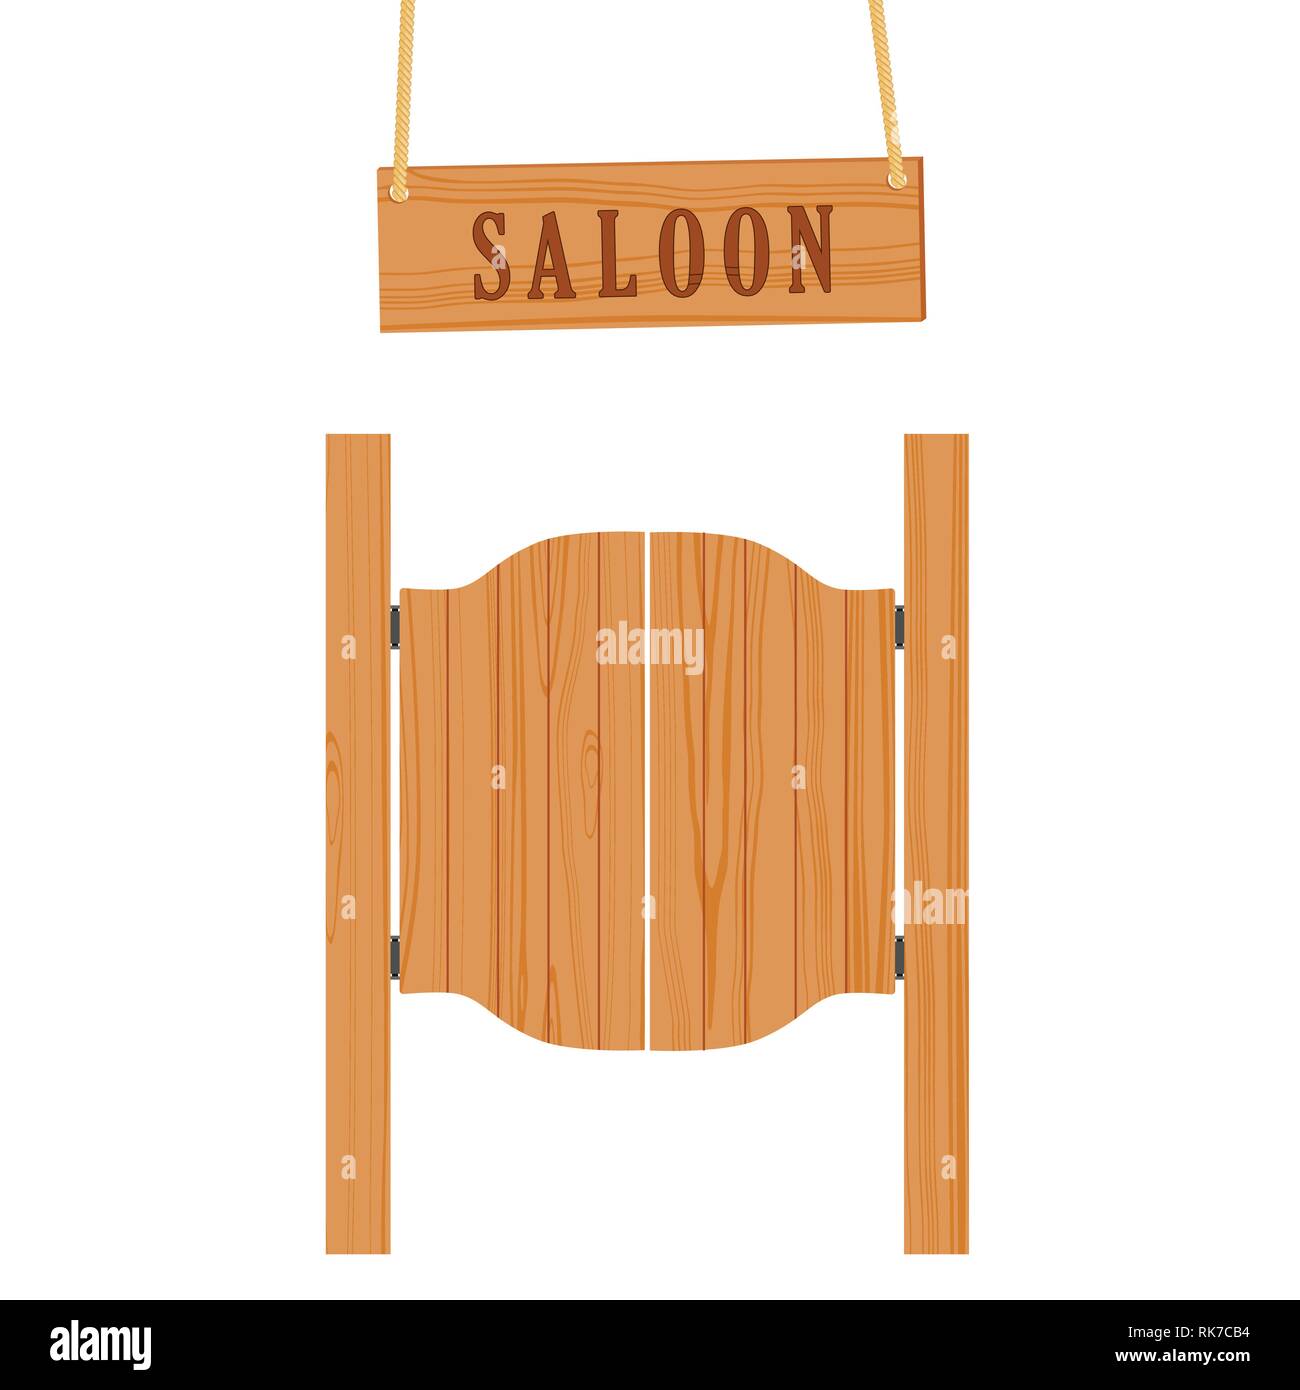 Old Saloon Doors Isolated Stock Photo - Download Image Now - Saloon, Door,  Wild West - iStock